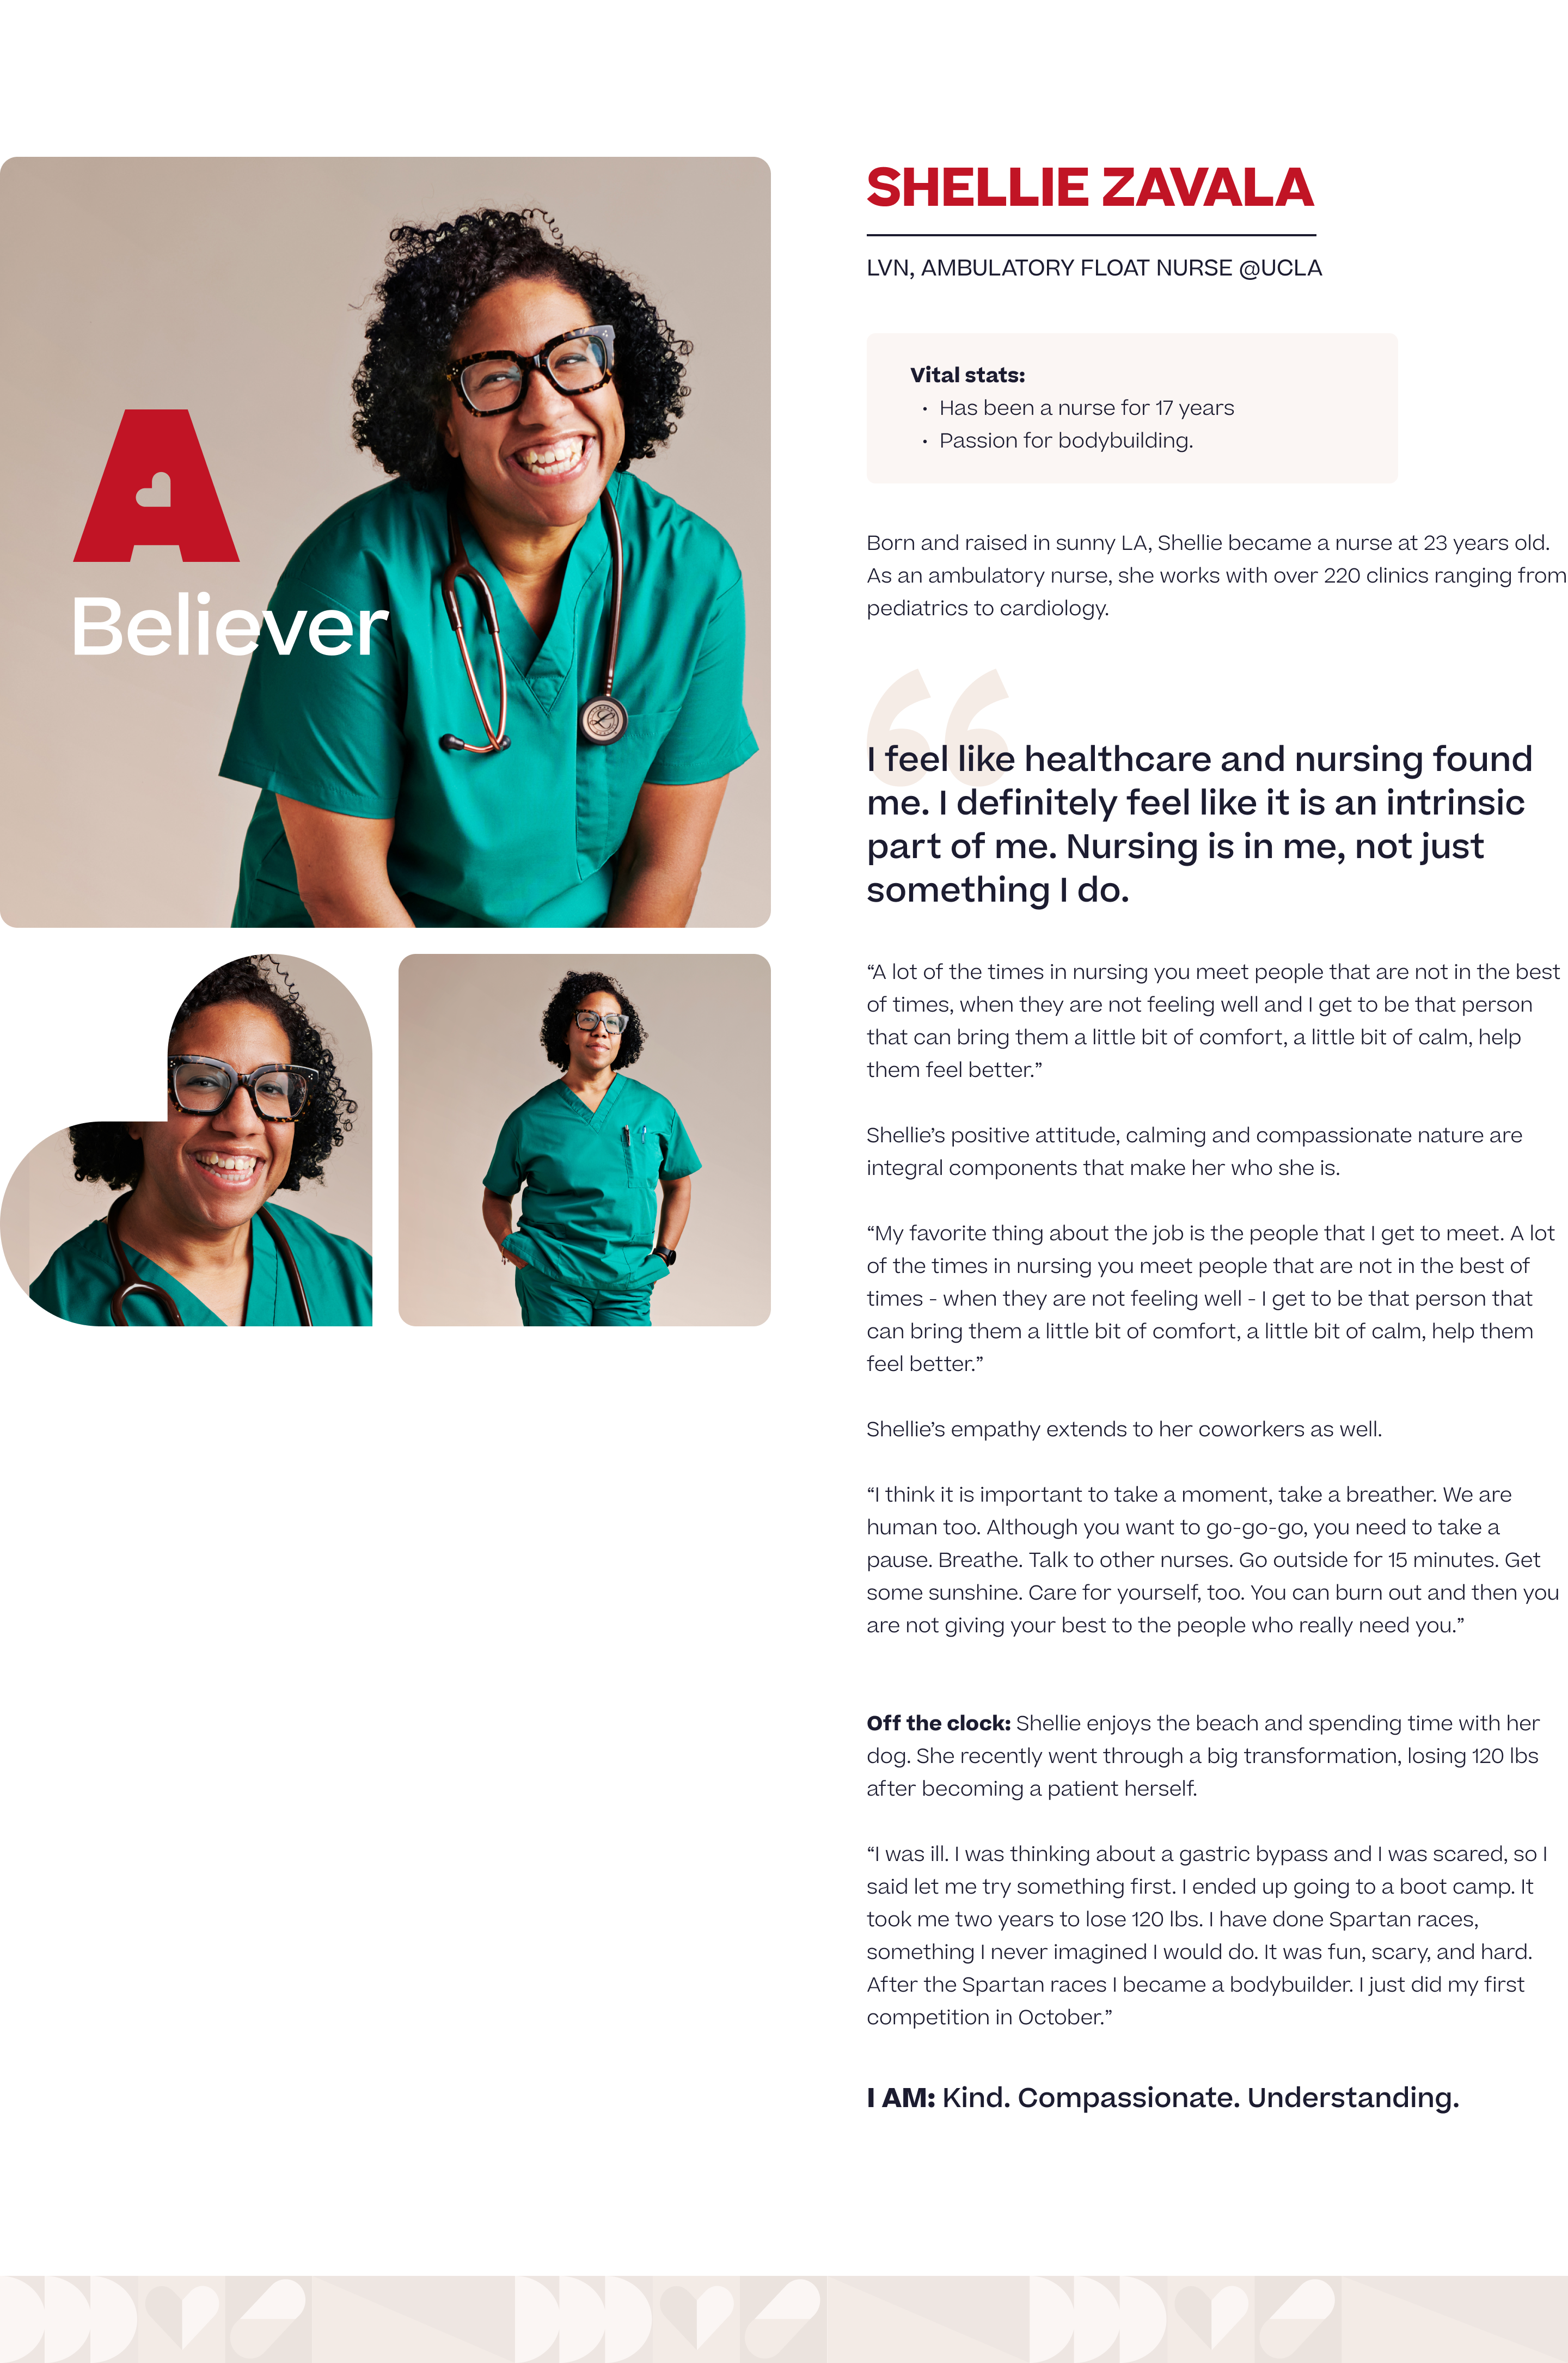 About Shellie Zavala, LVN, ambulatory float nurse at UCLA.